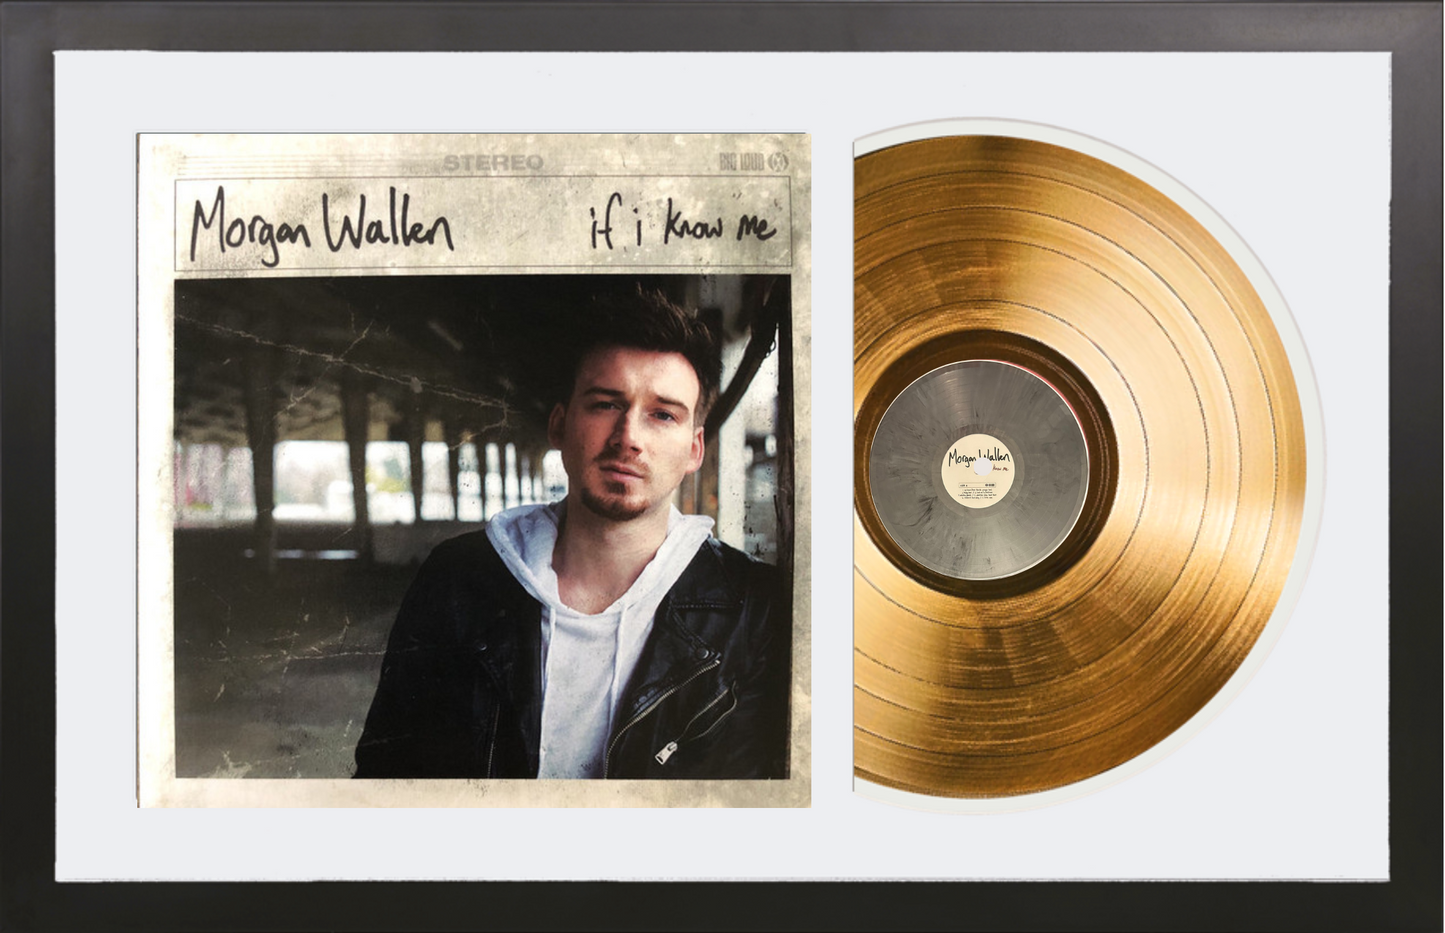 Morgan Wallen - If I Know Me - 14K Gold Framed Album